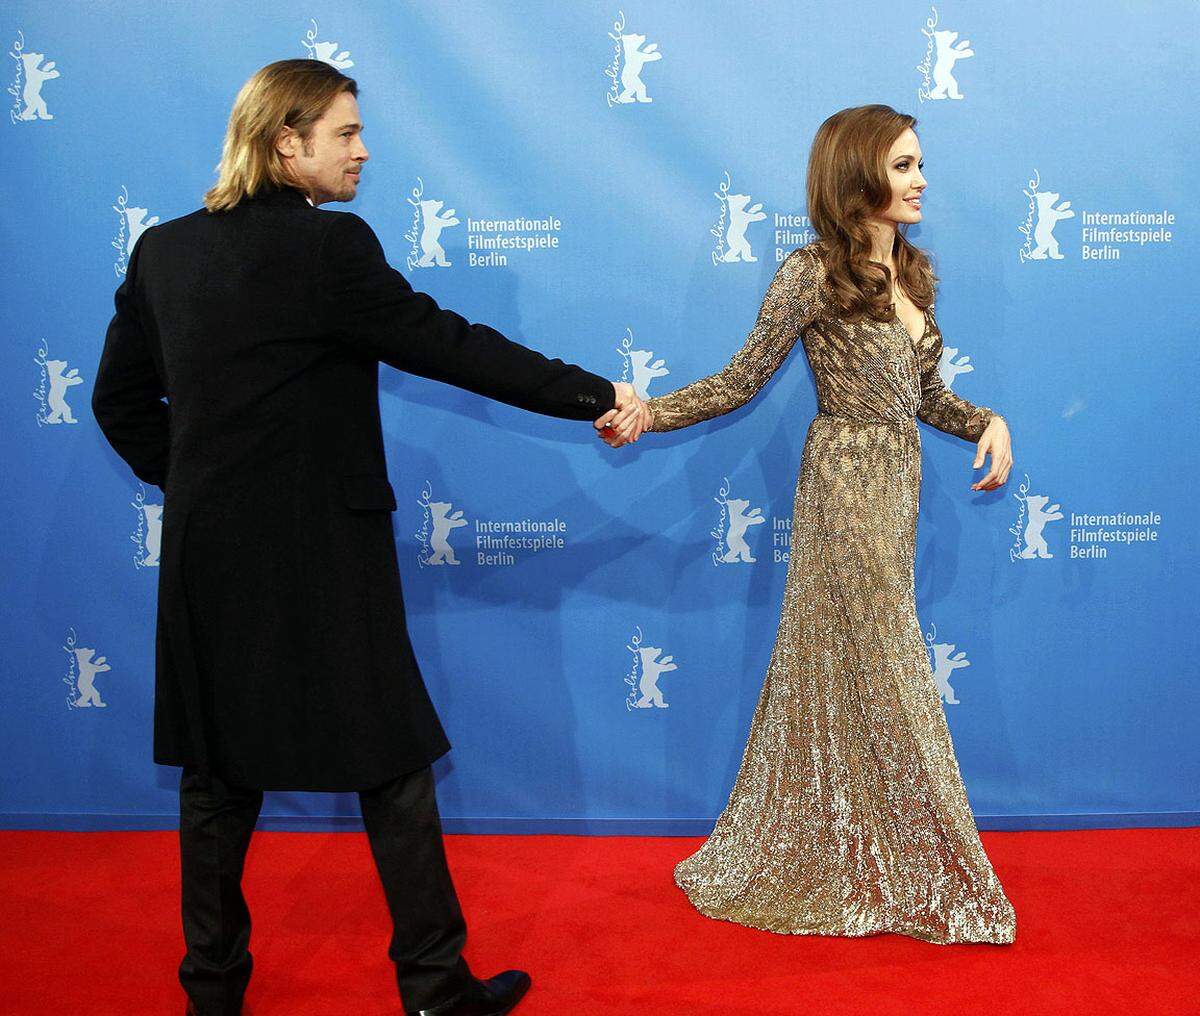 Außerdem stand sie dieses Mal nicht im Mittelpunkt. "Ich war sehr froh, die Kamera auf alle anderen Leute zu halten", gestand Jolie.